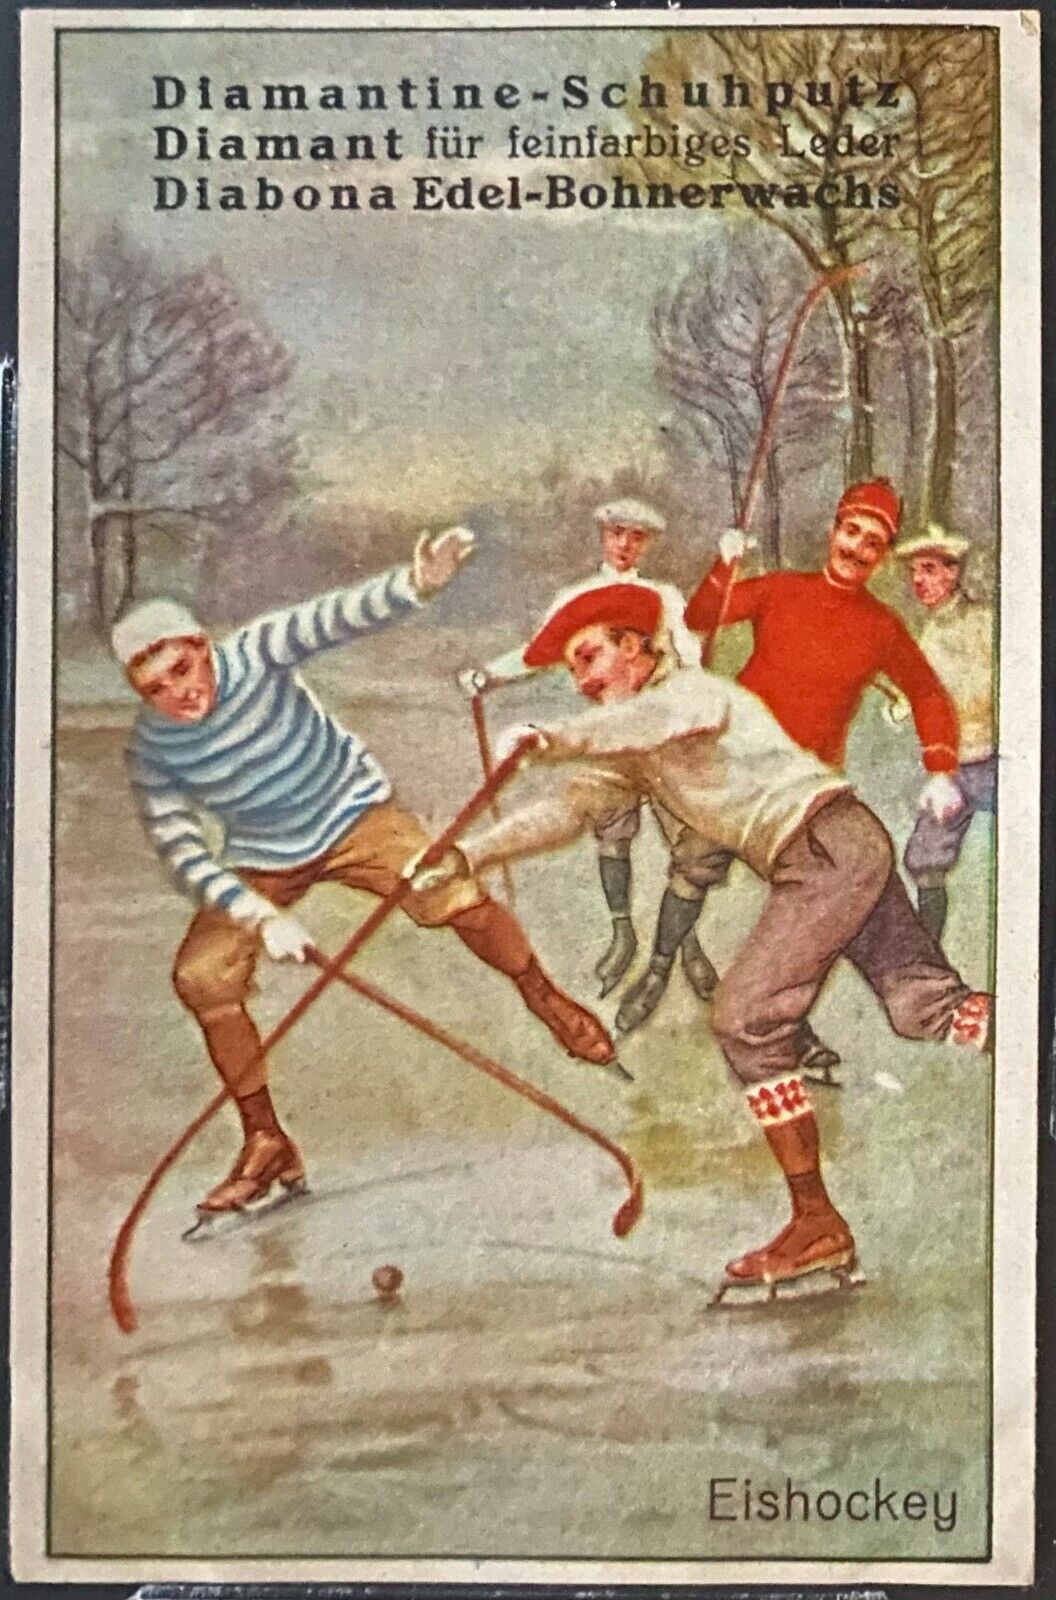 1879 Vintage Diamantine Hockey Cards Very Rare Hockey Image